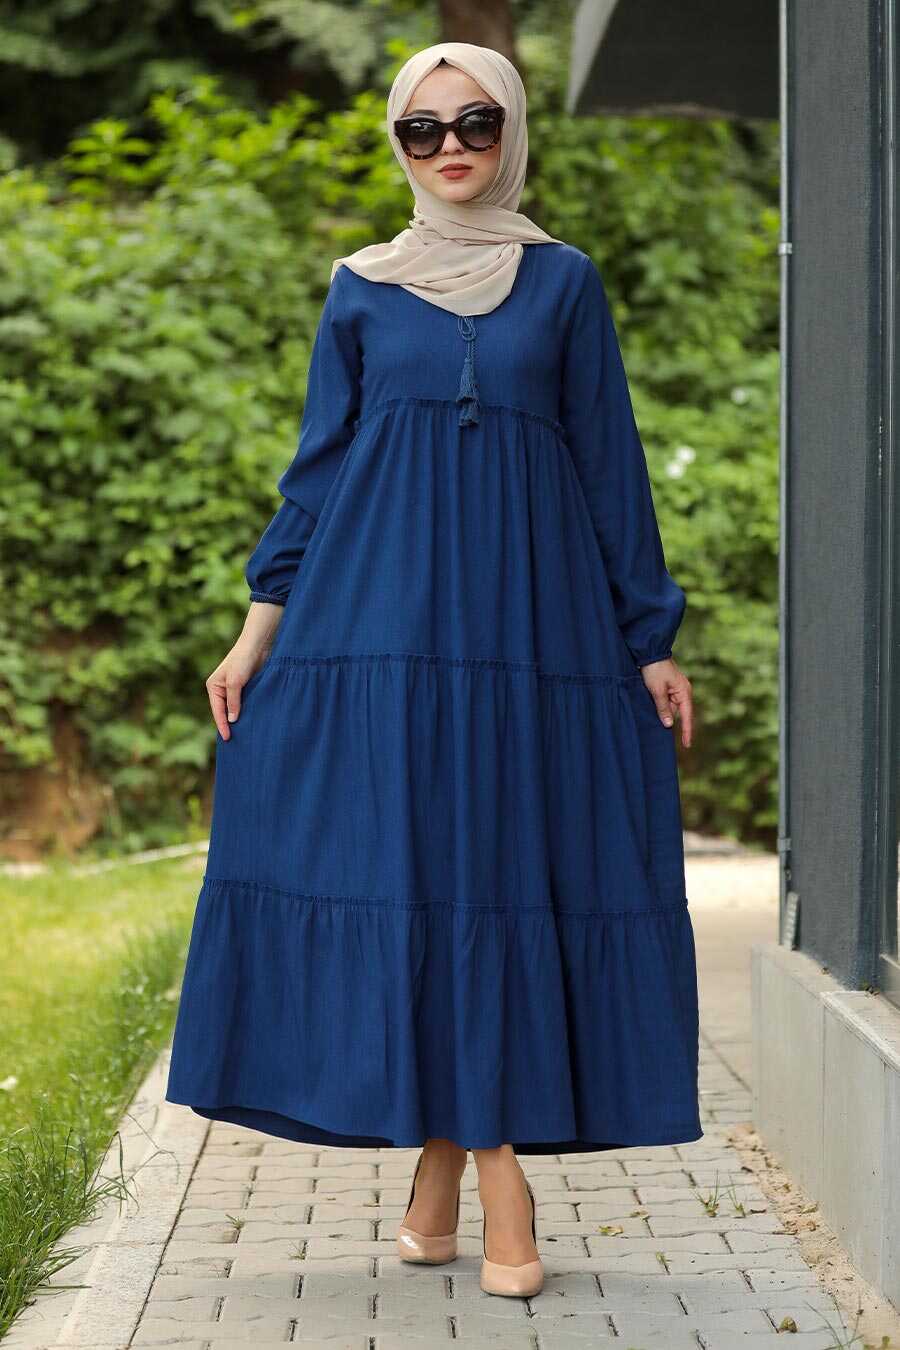 İndigo Blue Hijab Daily Dress 4810IM - Neva-style.com